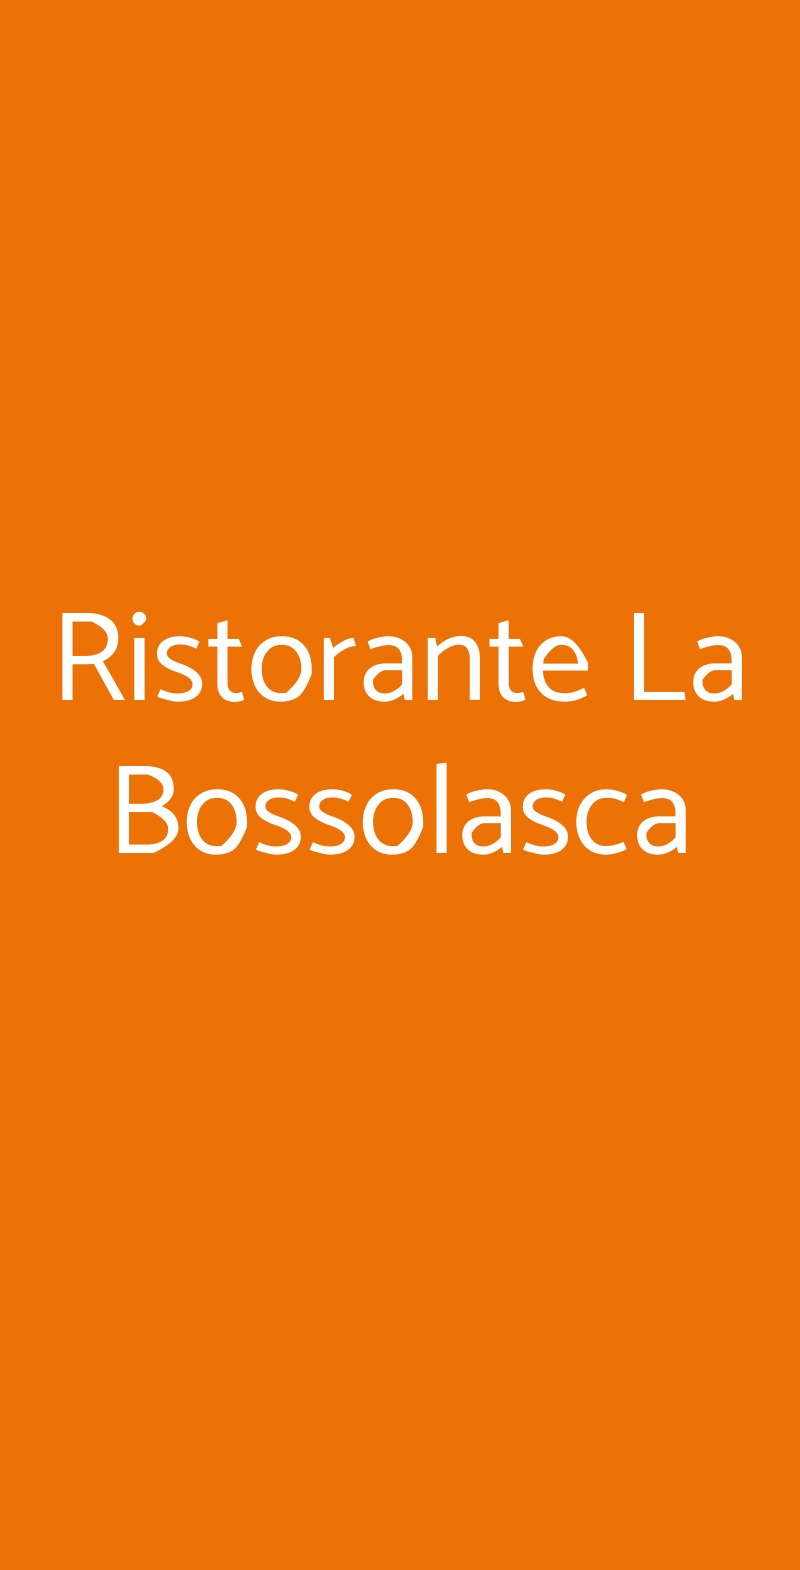 Ristorante La Bossolasca Santo Stefano Belbo menù 1 pagina